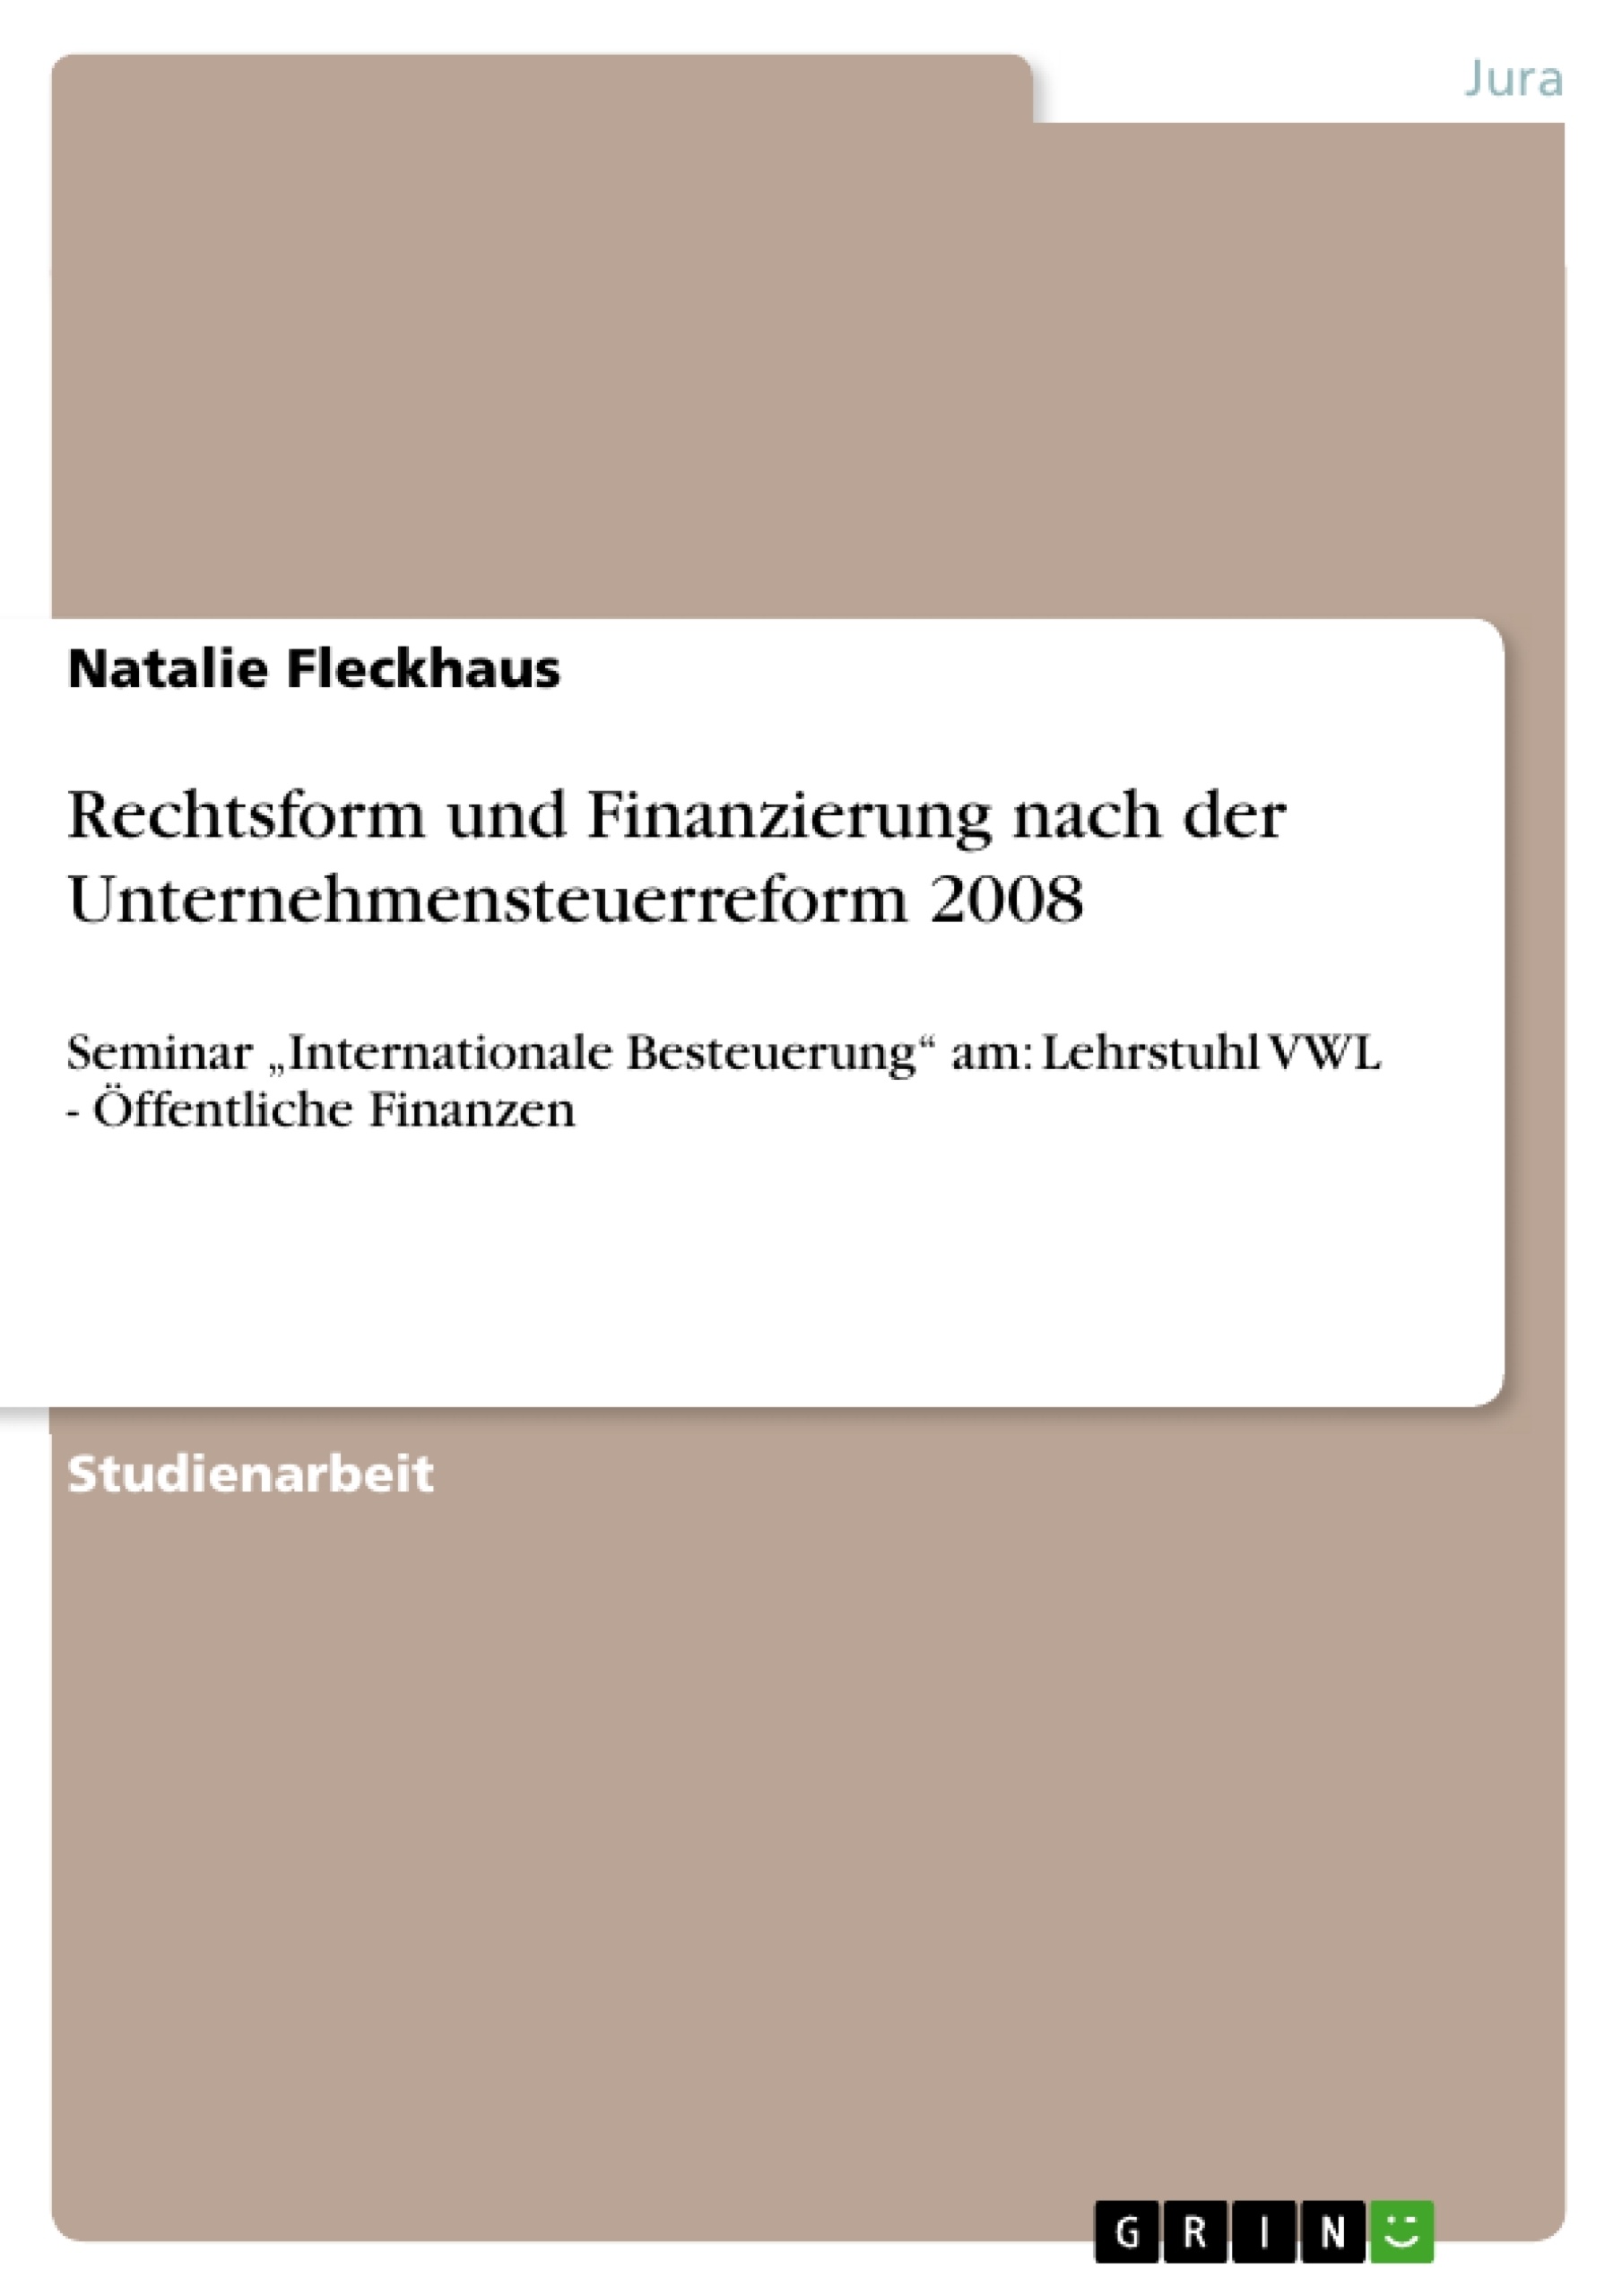 Title: Rechtsform und Finanzierung nach der Unternehmensteuerreform 2008